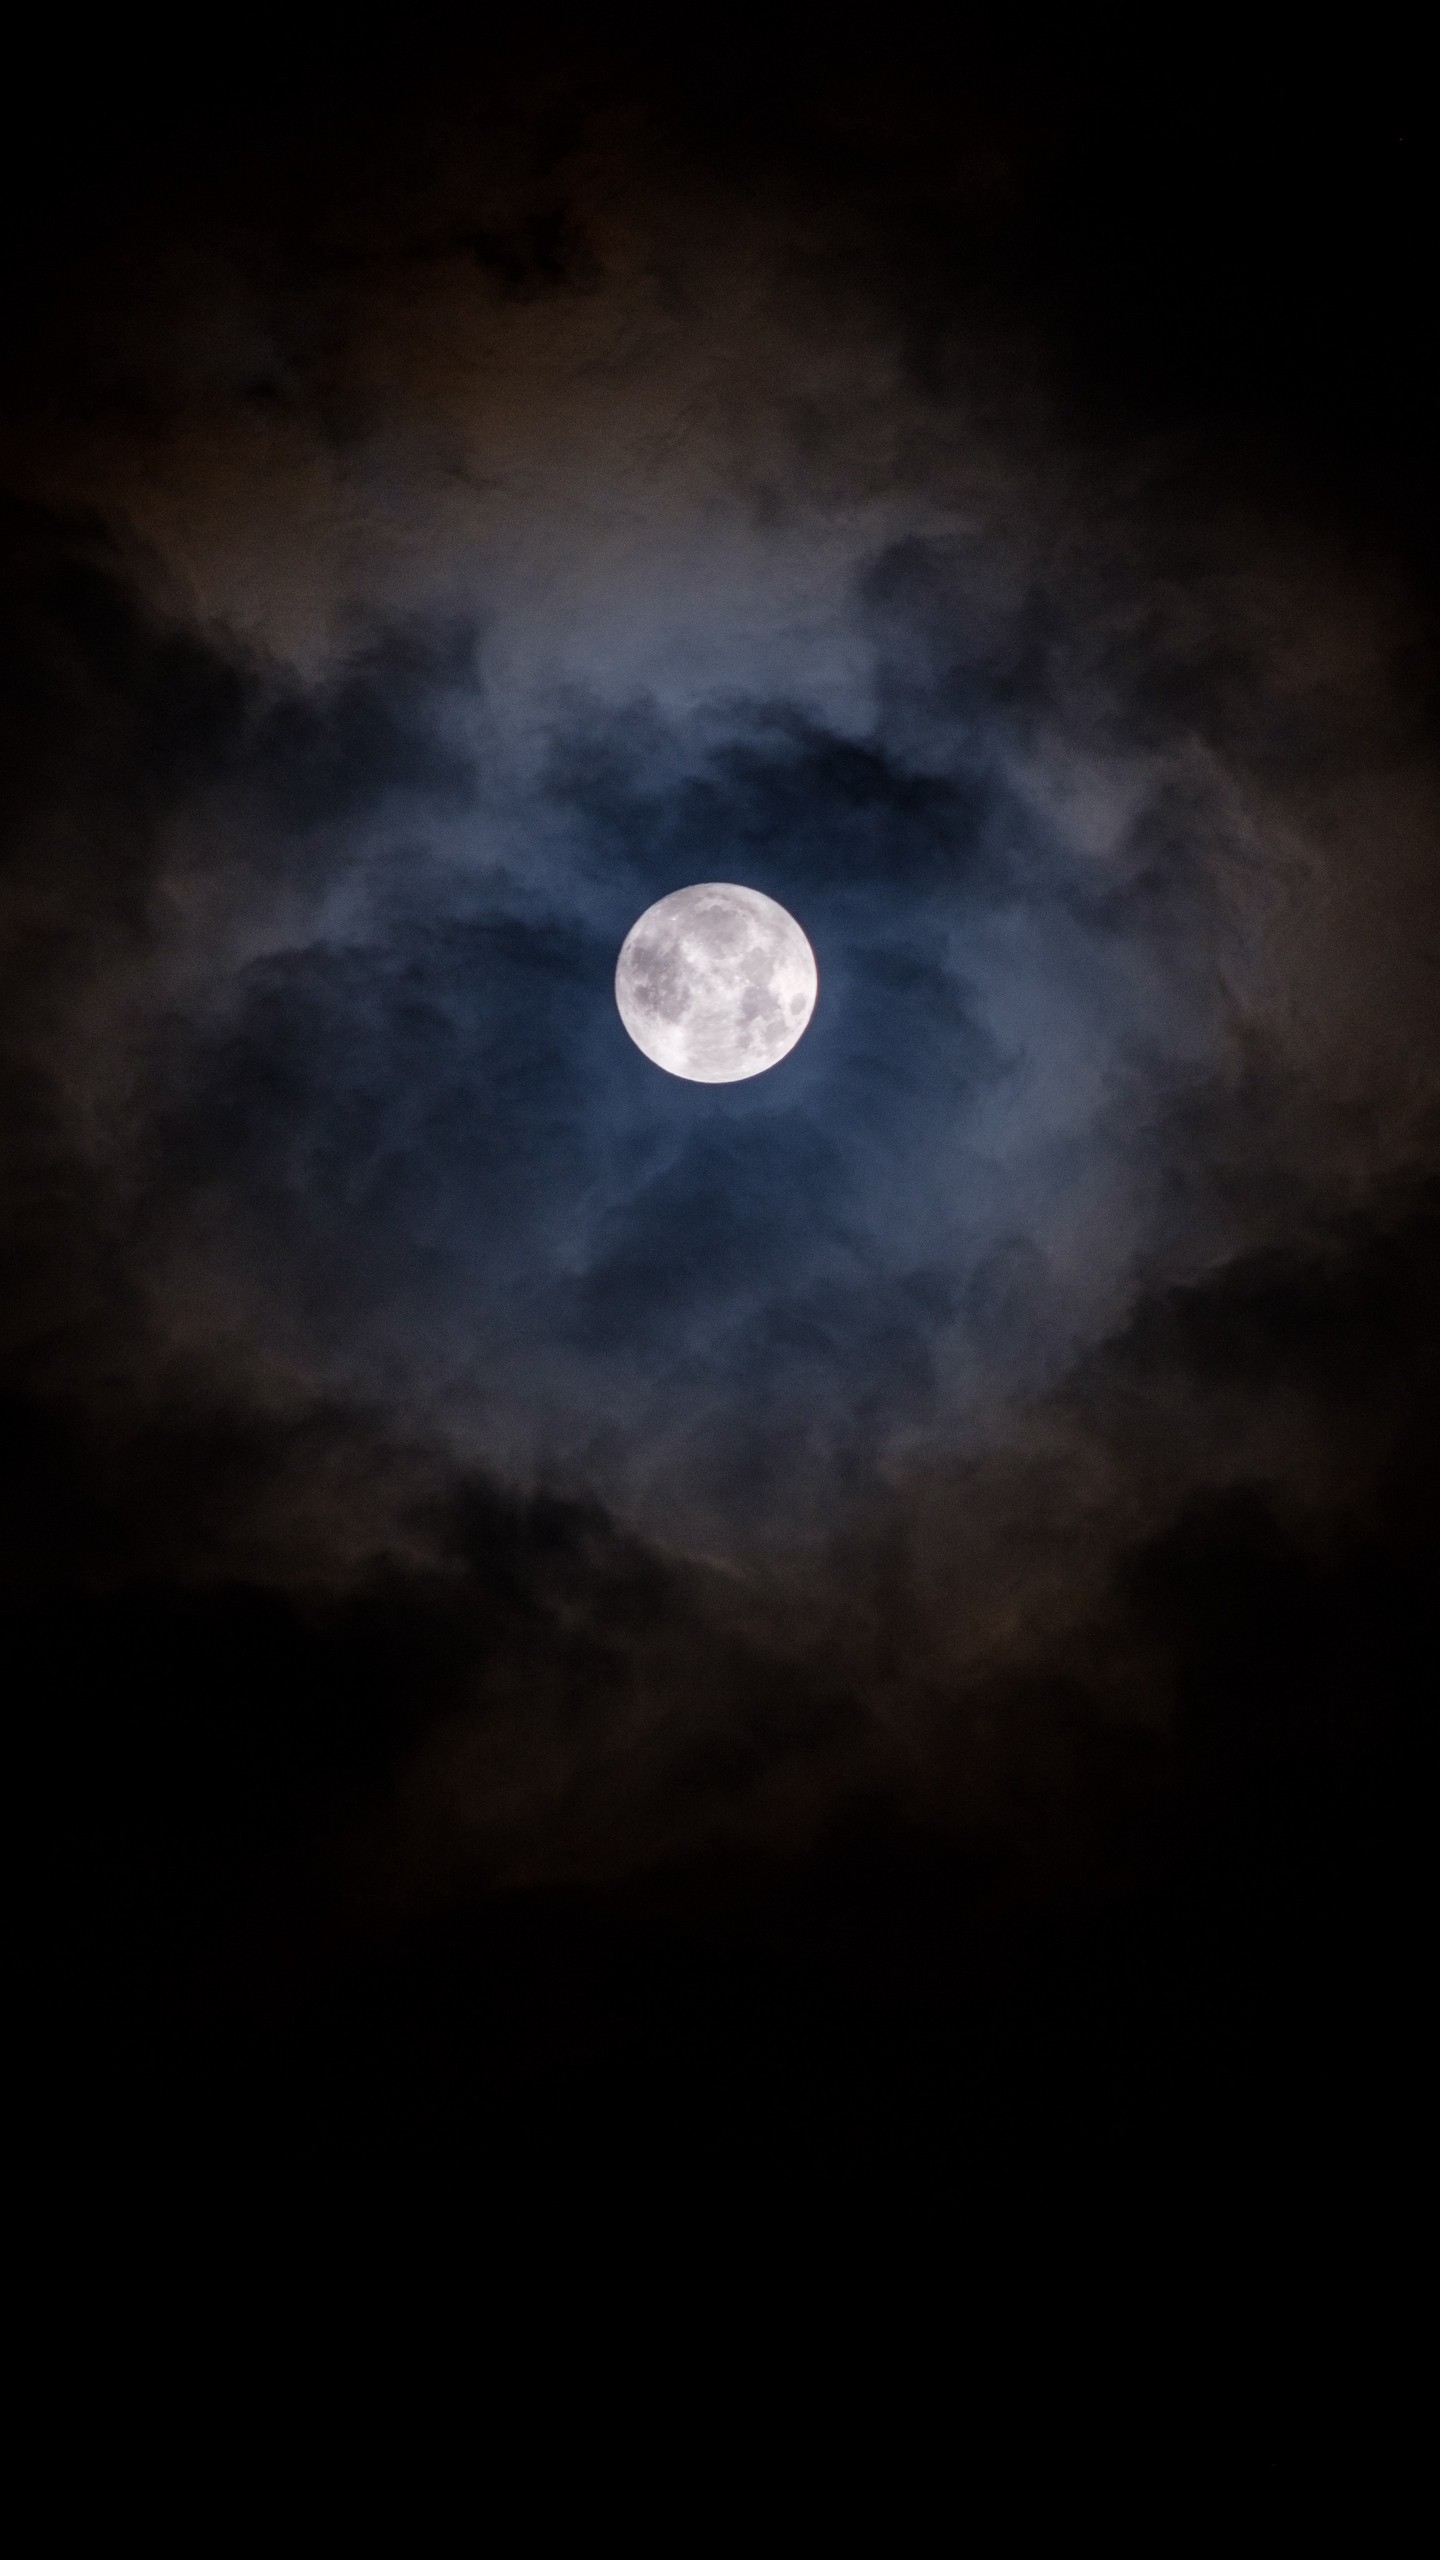 Обои на телефон луна, облака, ночь, темный, лунный свет - скачать бесплатно  в высоком качестве из категории Темные